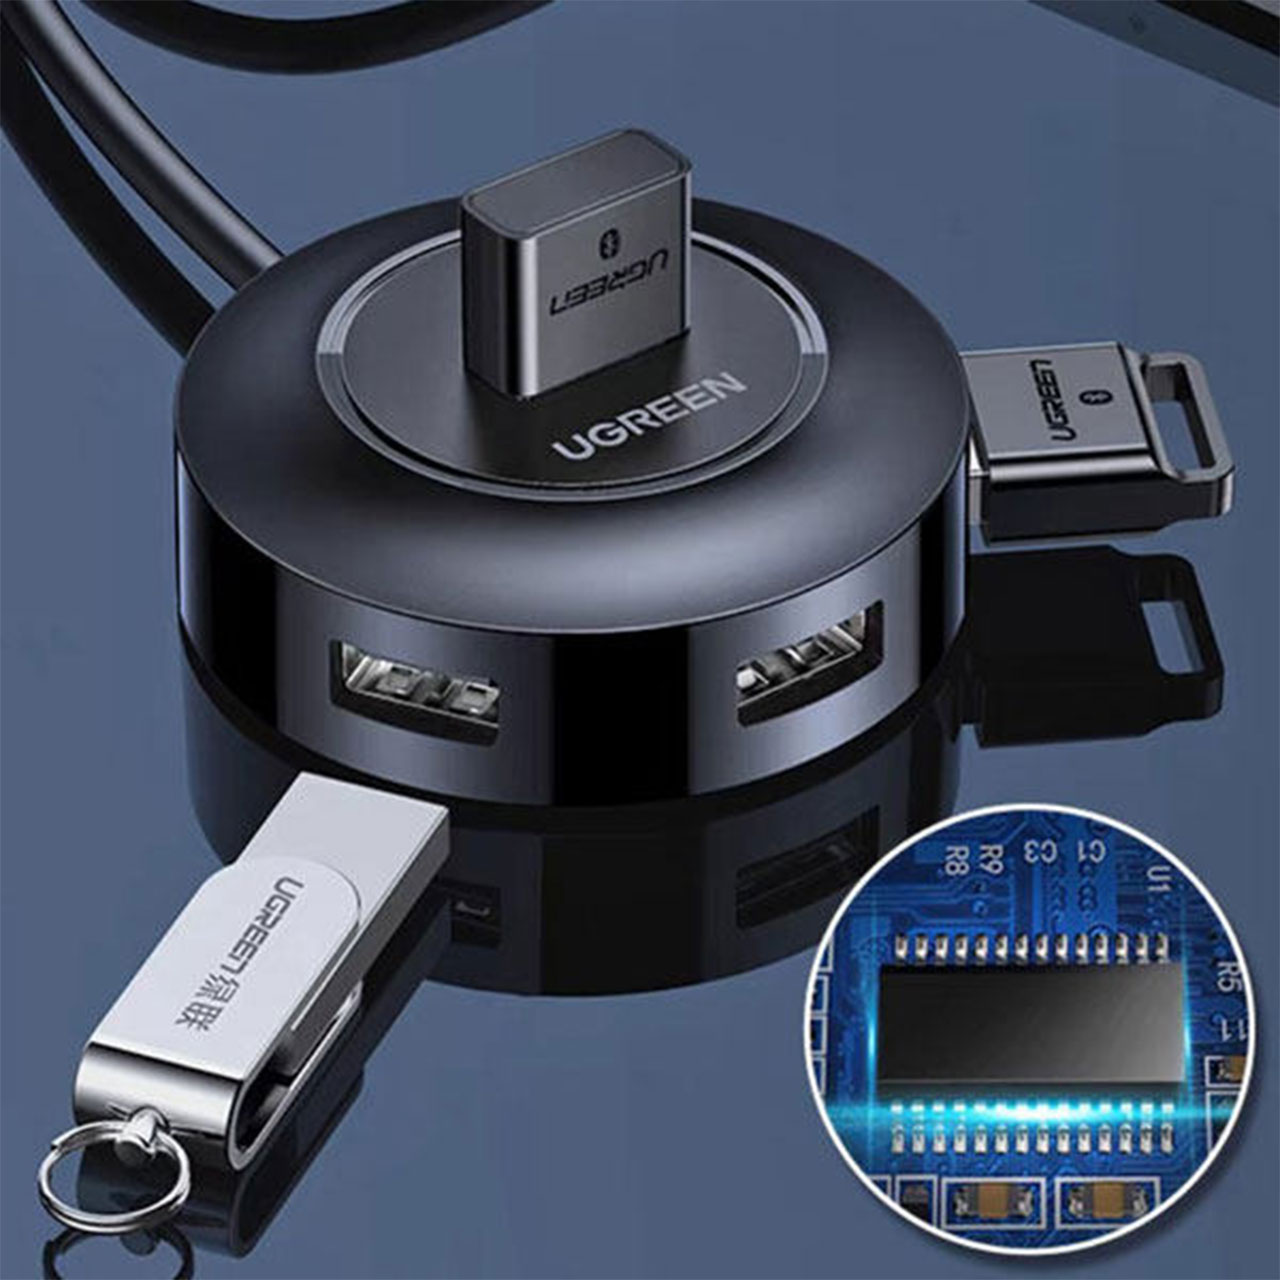 هاب USB یوگرین 4 پورت CR106 مدل 20277